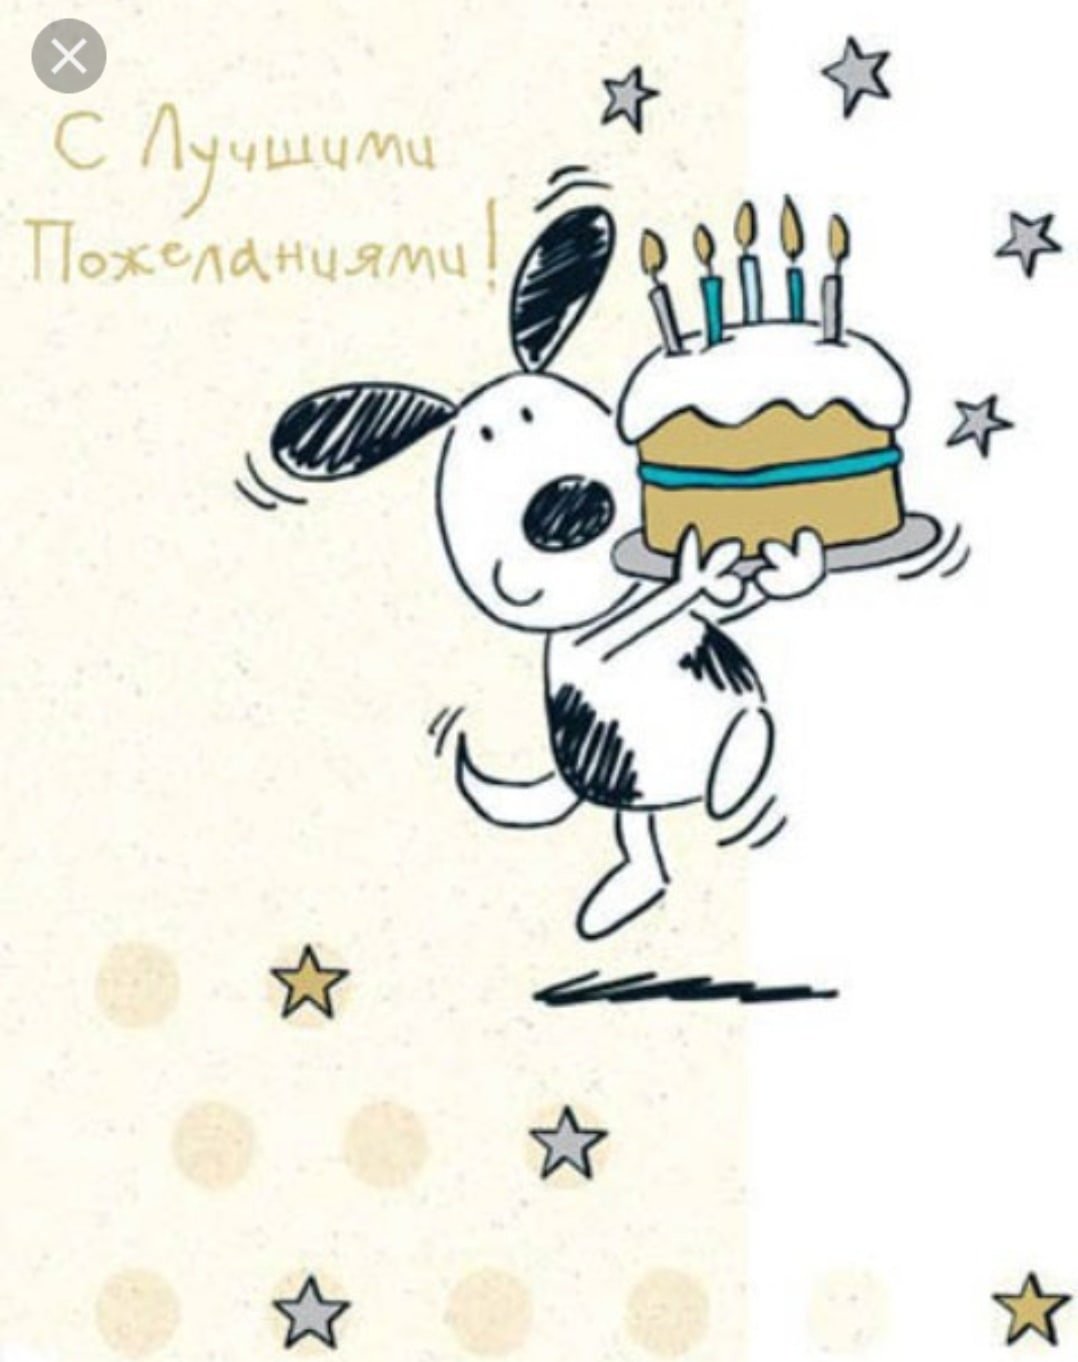 Поздравление с днем рождения мужчине от подруги. С днем рождения. Открытка с днём рождения. Стильные открытки с днем рождения. С͇ д͇н͇е͇ р͇о͇ж͇д͇е͇н͇и͇я͇.